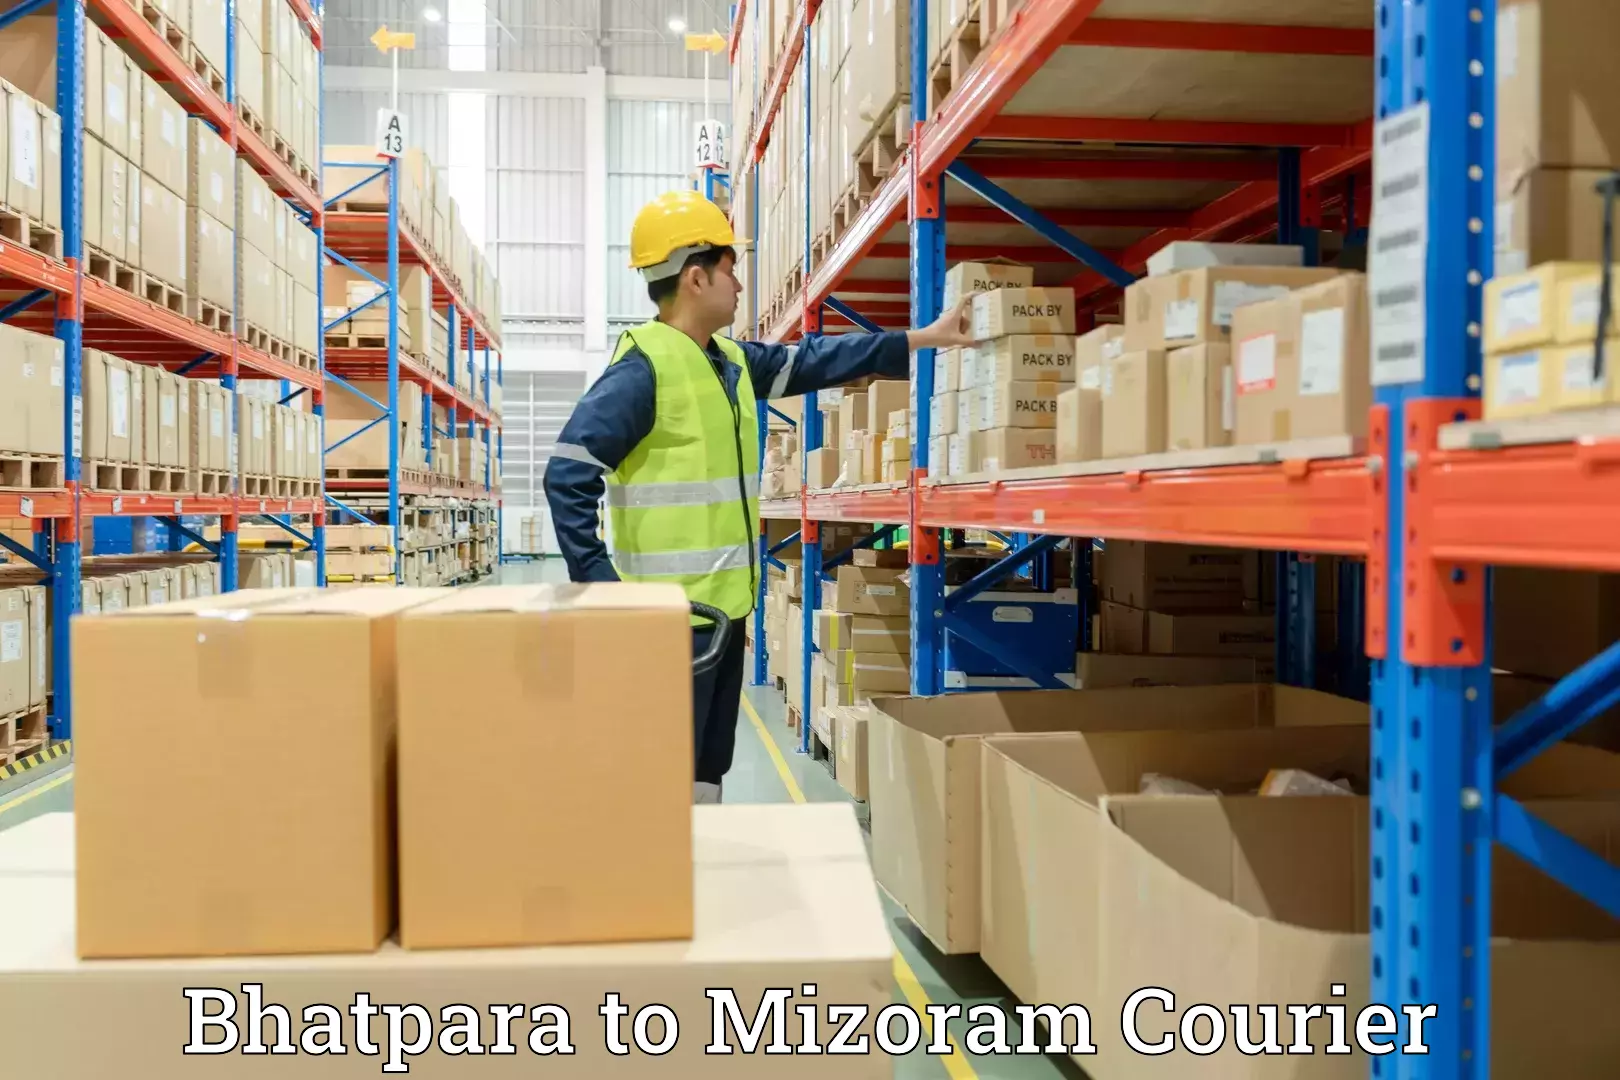 Quality moving company Bhatpara to Mizoram